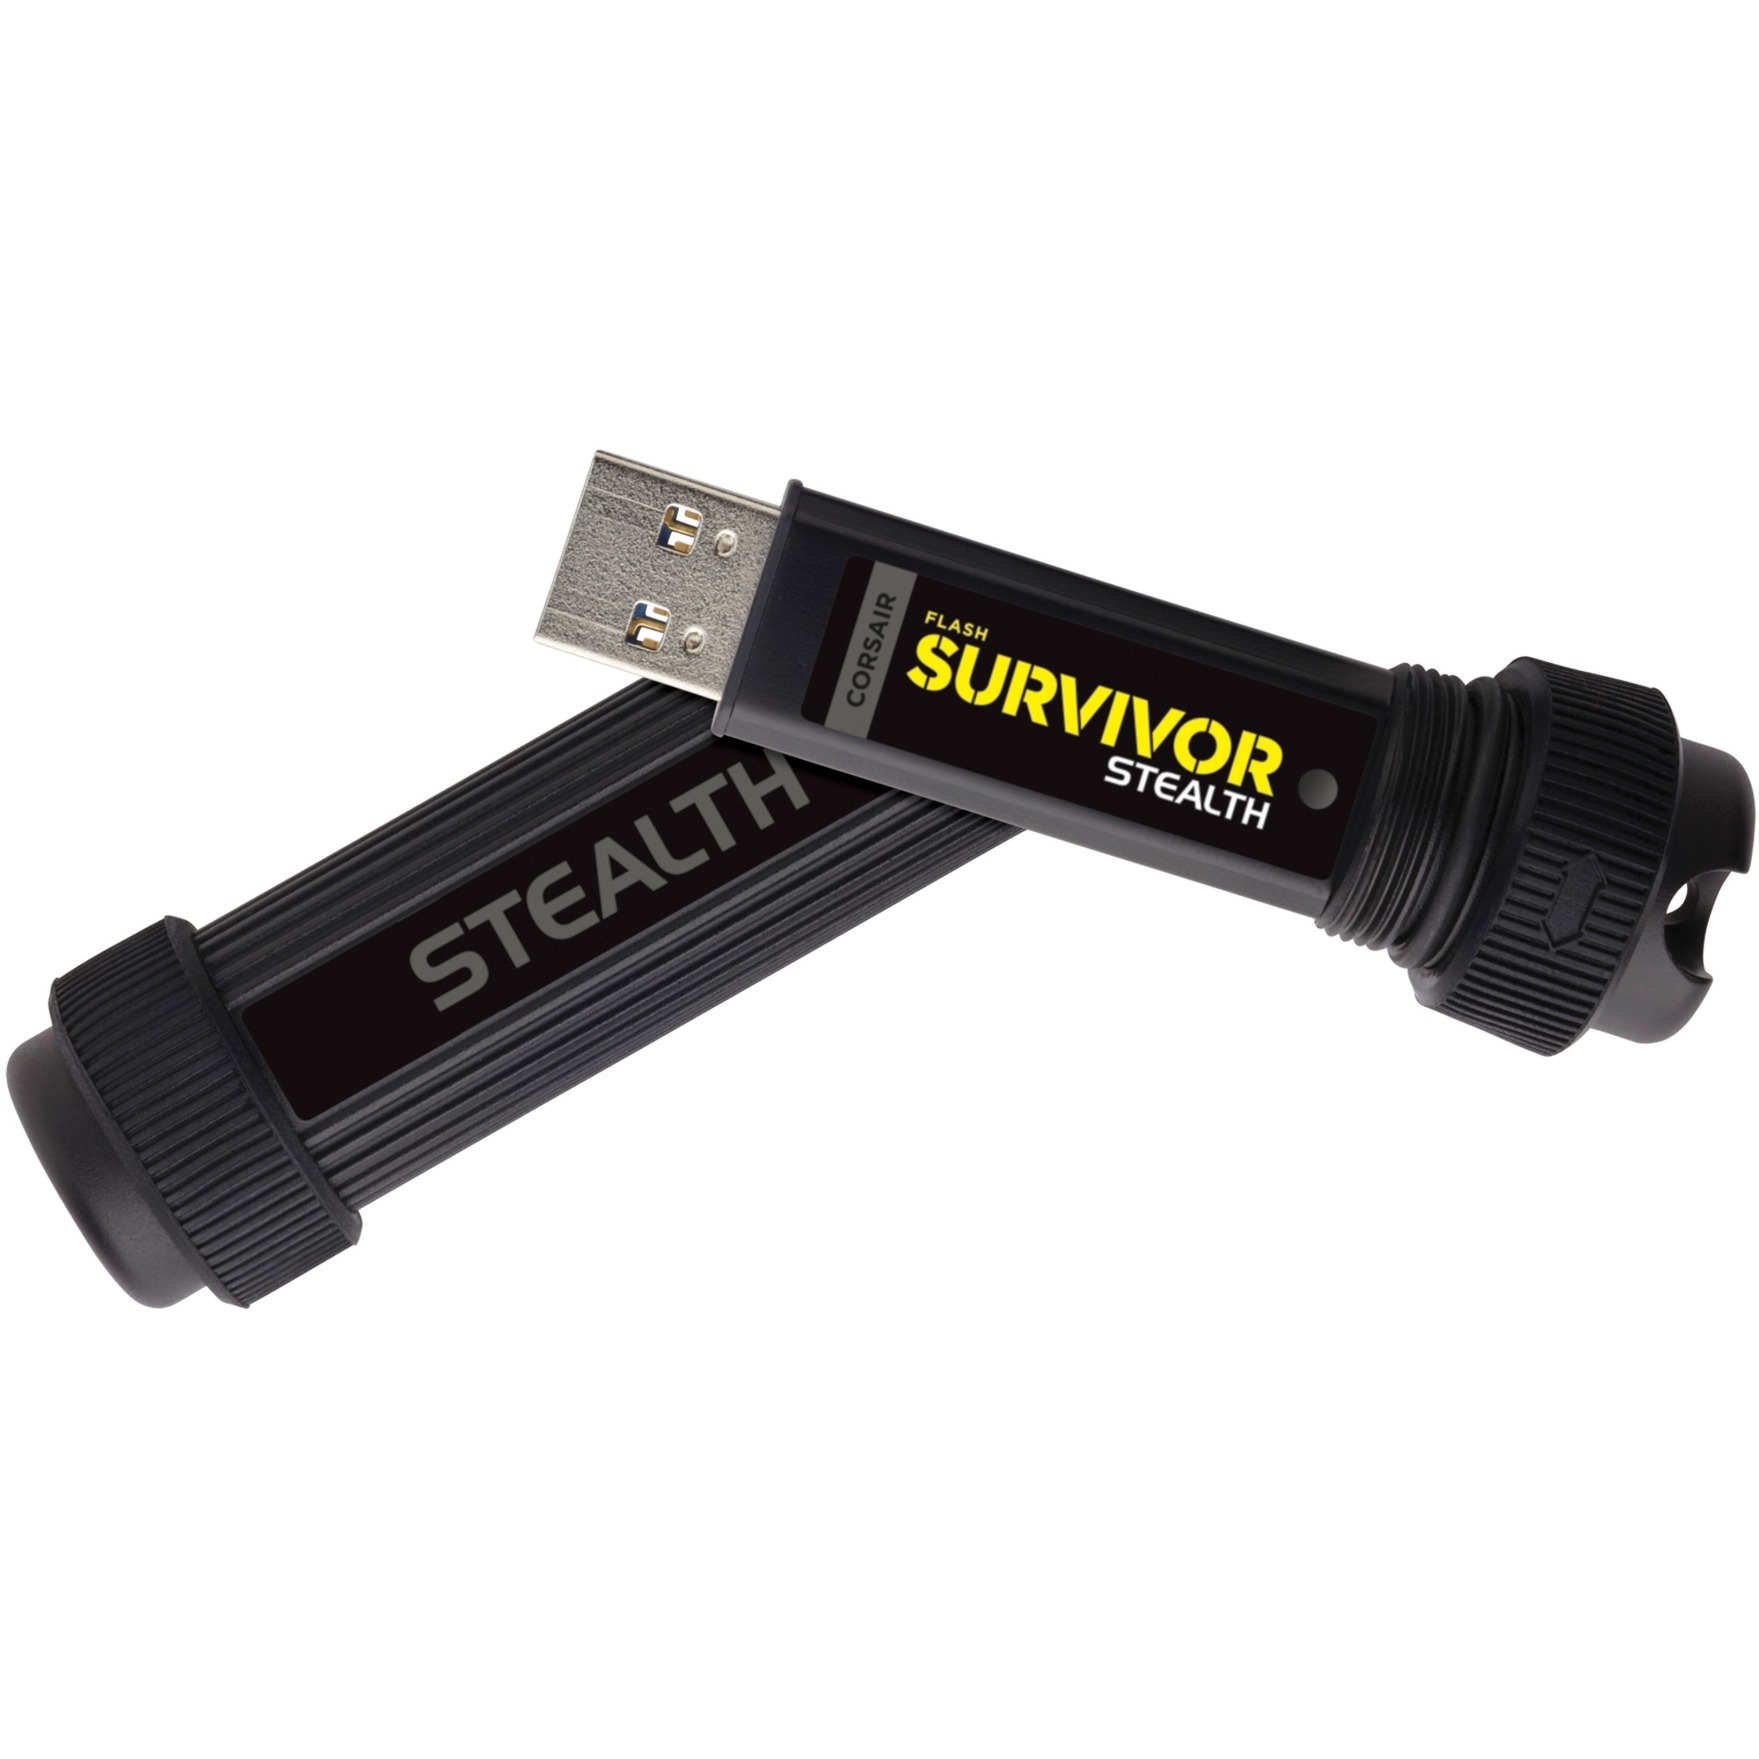 Image of Alternate - Flash Survivor Stealth 1 TB, USB-Stick online einkaufen bei Alternate